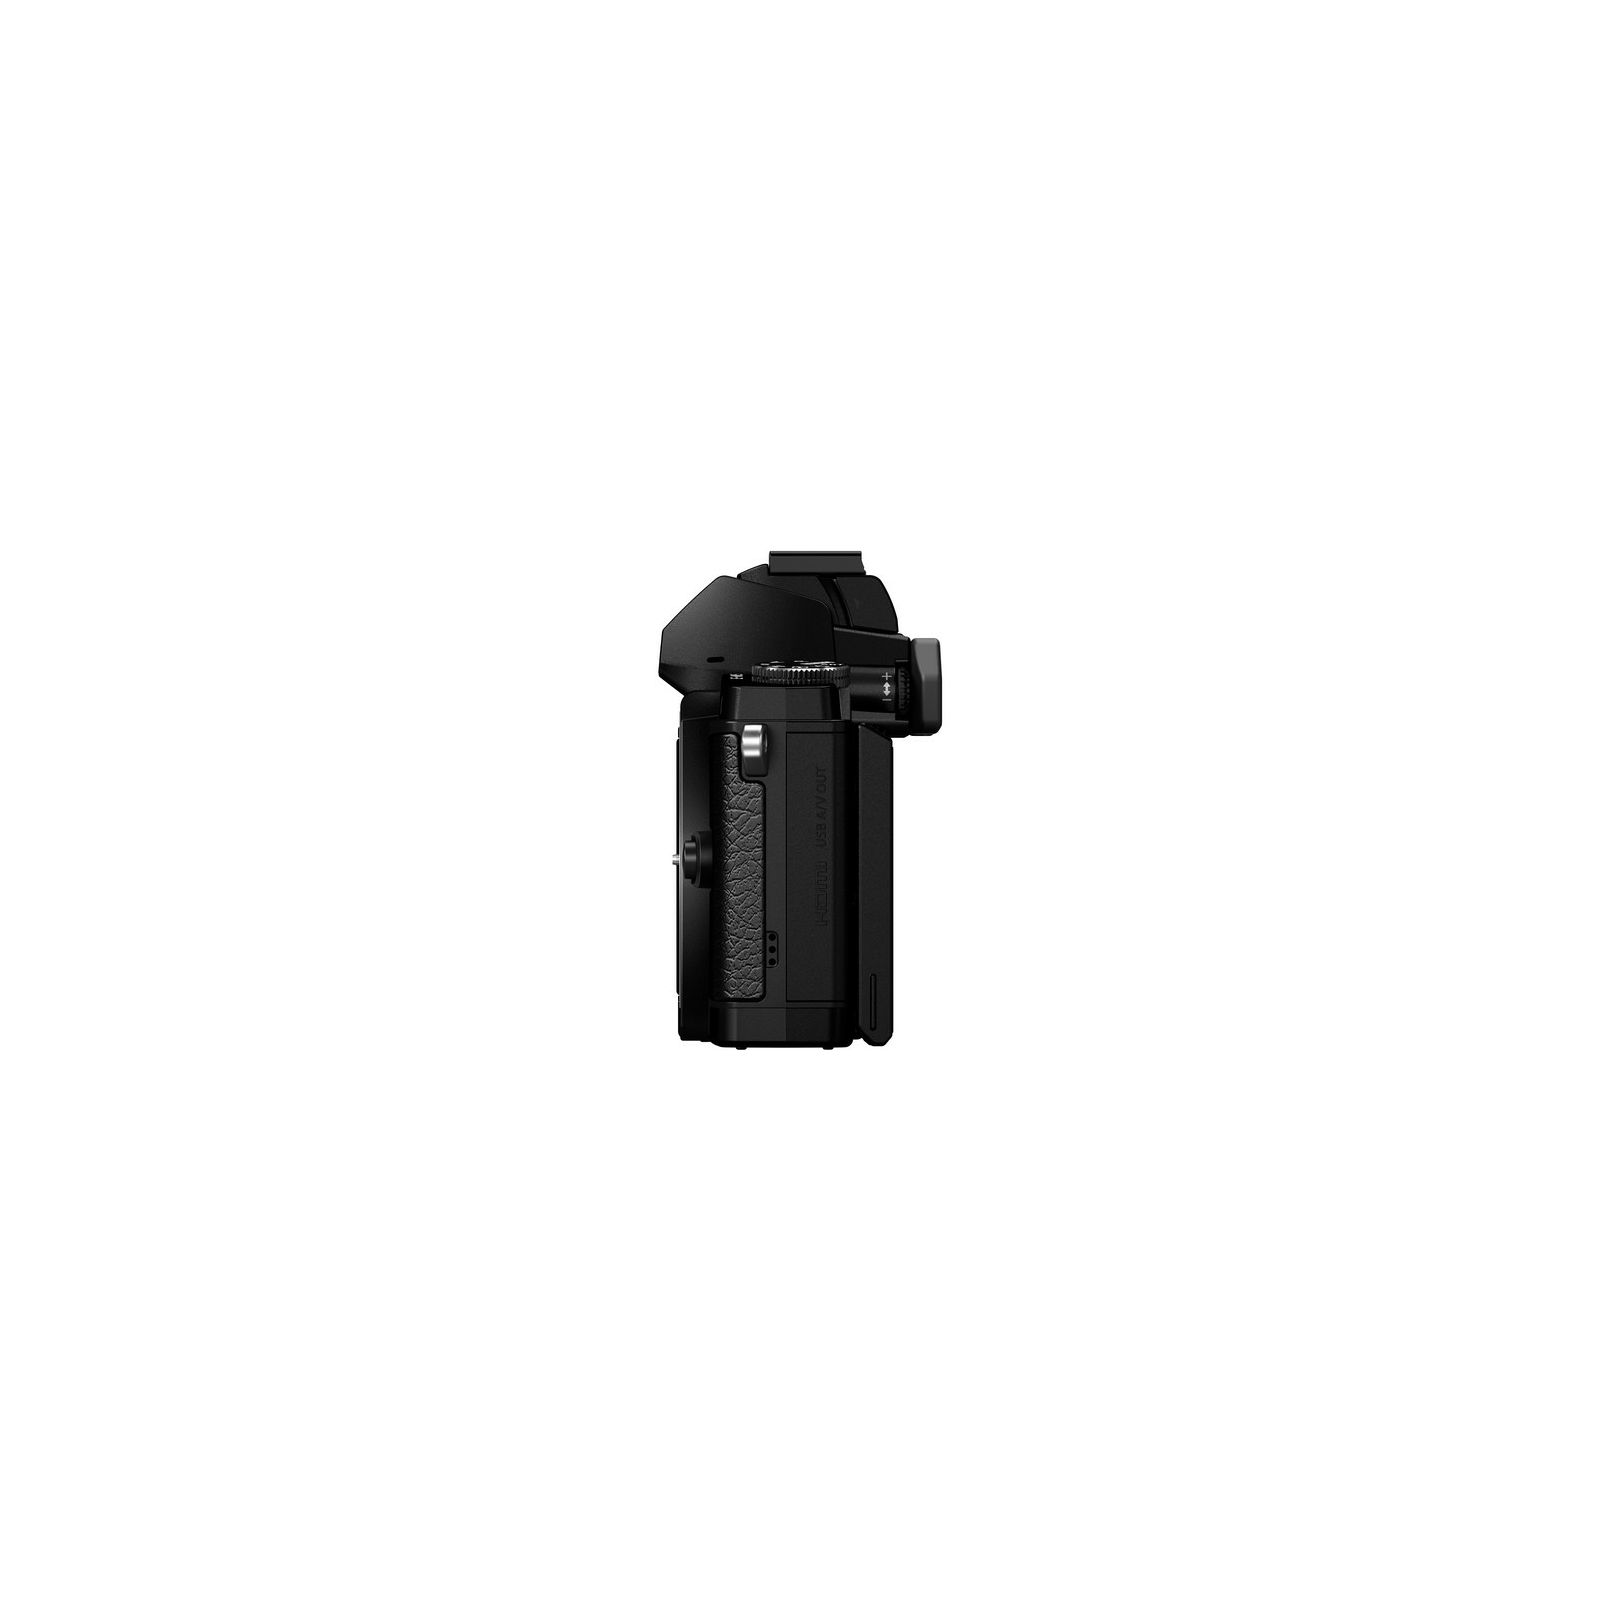 Olympus E-M5 Elite black + EZ-M1250 Kit black 12-50mm